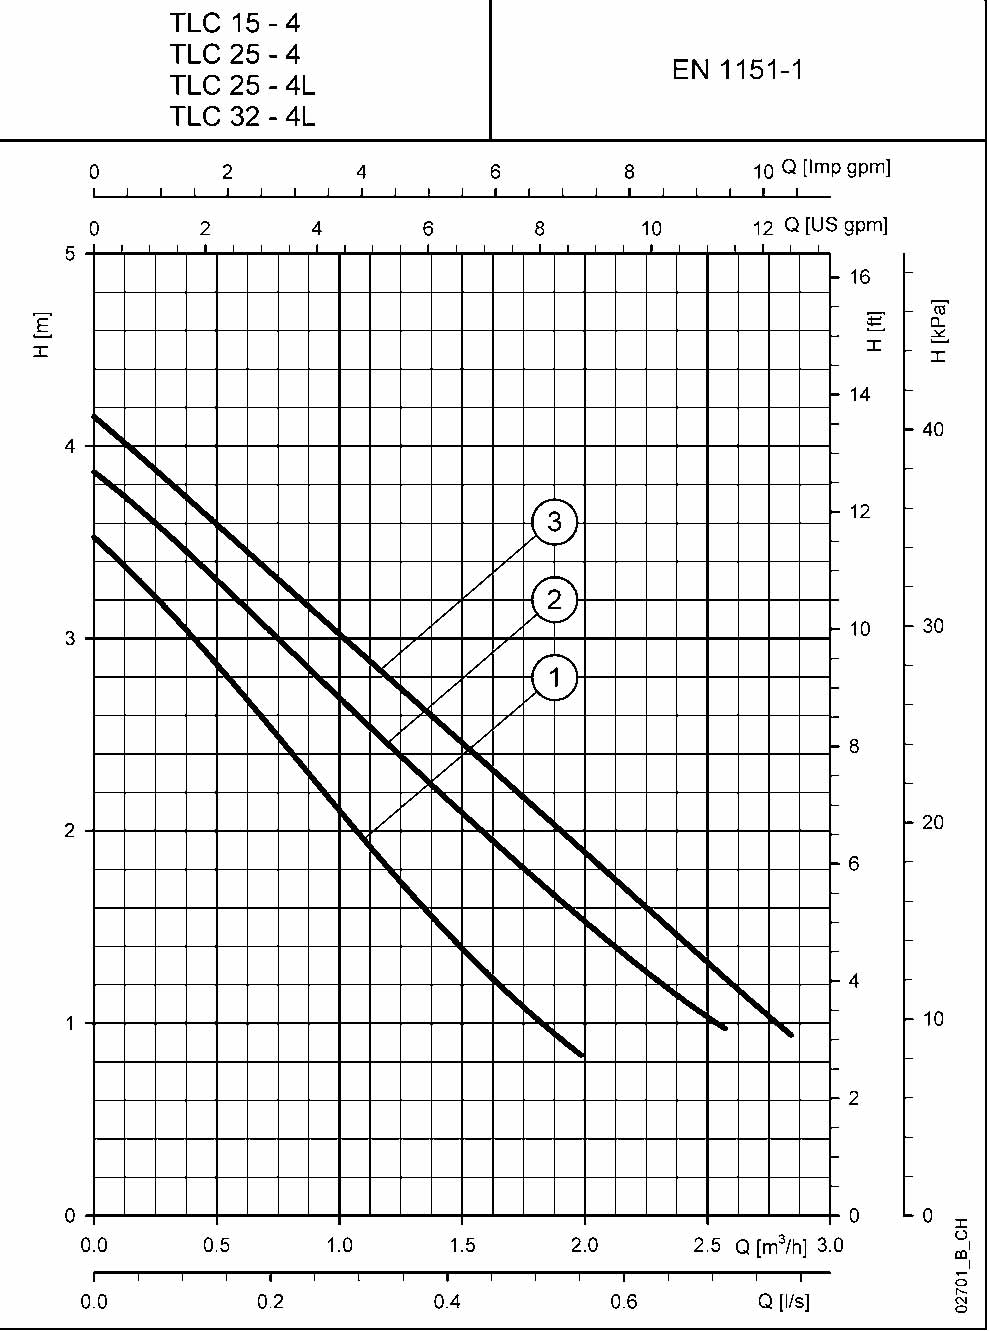 نمودار عملکرد سیرکولاتور لوارا TLC25-4